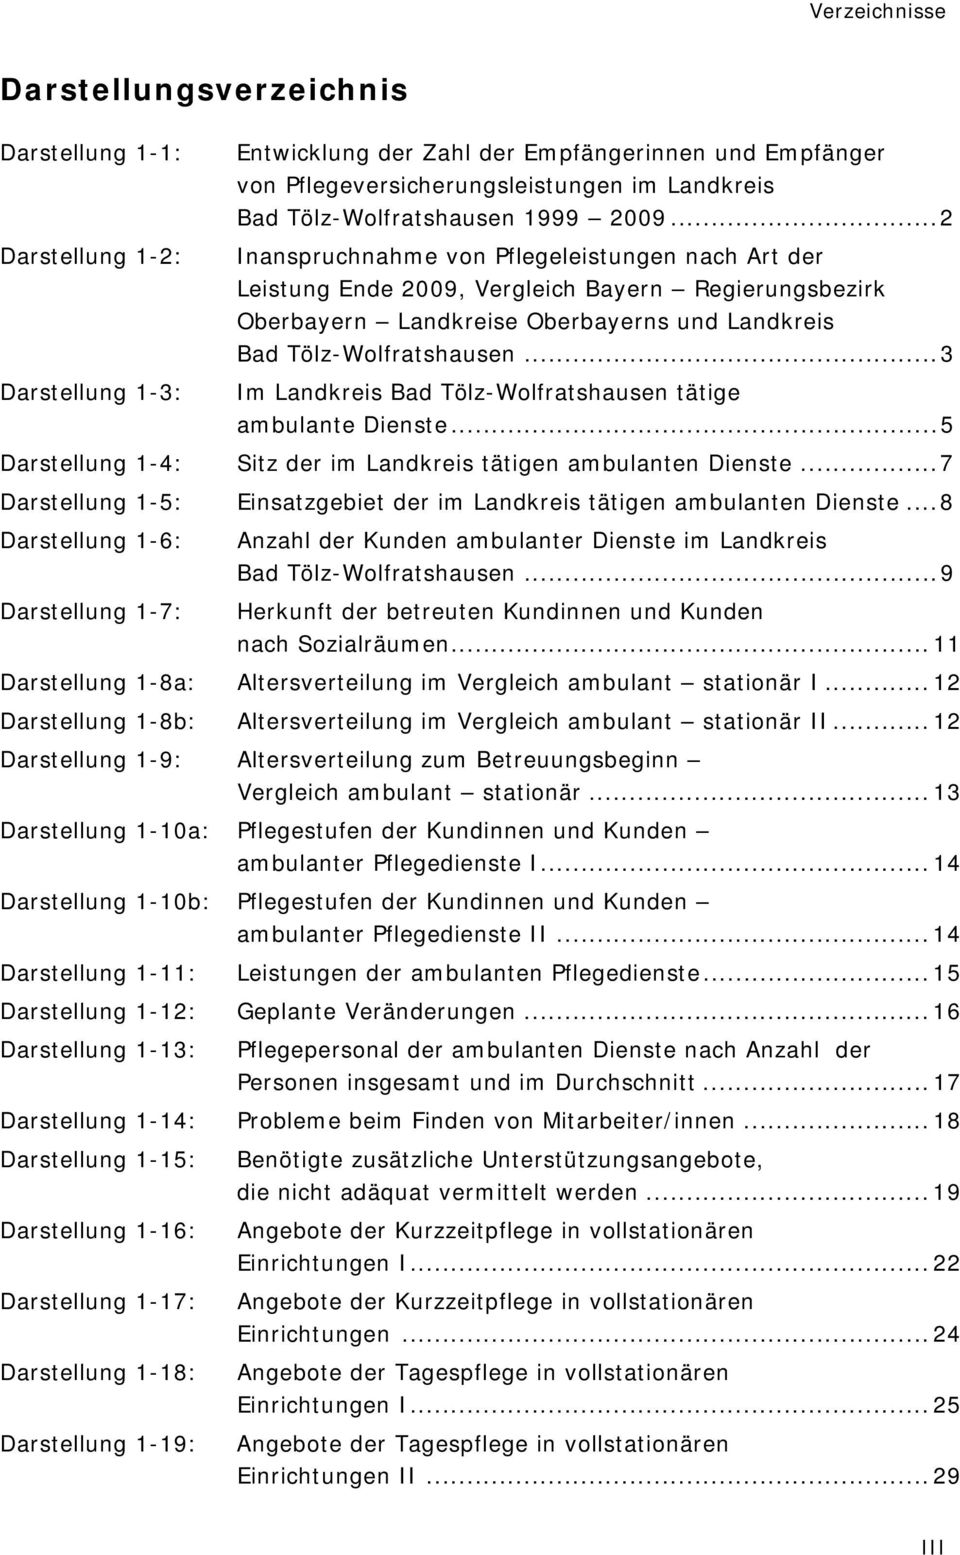 ..2 Inanspruchnahme von Pflegeleistungen nach Art der Leistung Ende 2009, Vergleich Bayern Regierungsbezirk Oberbayern Landkreise Oberbayerns und Landkreis Bad Tölz-Wolfratshausen.